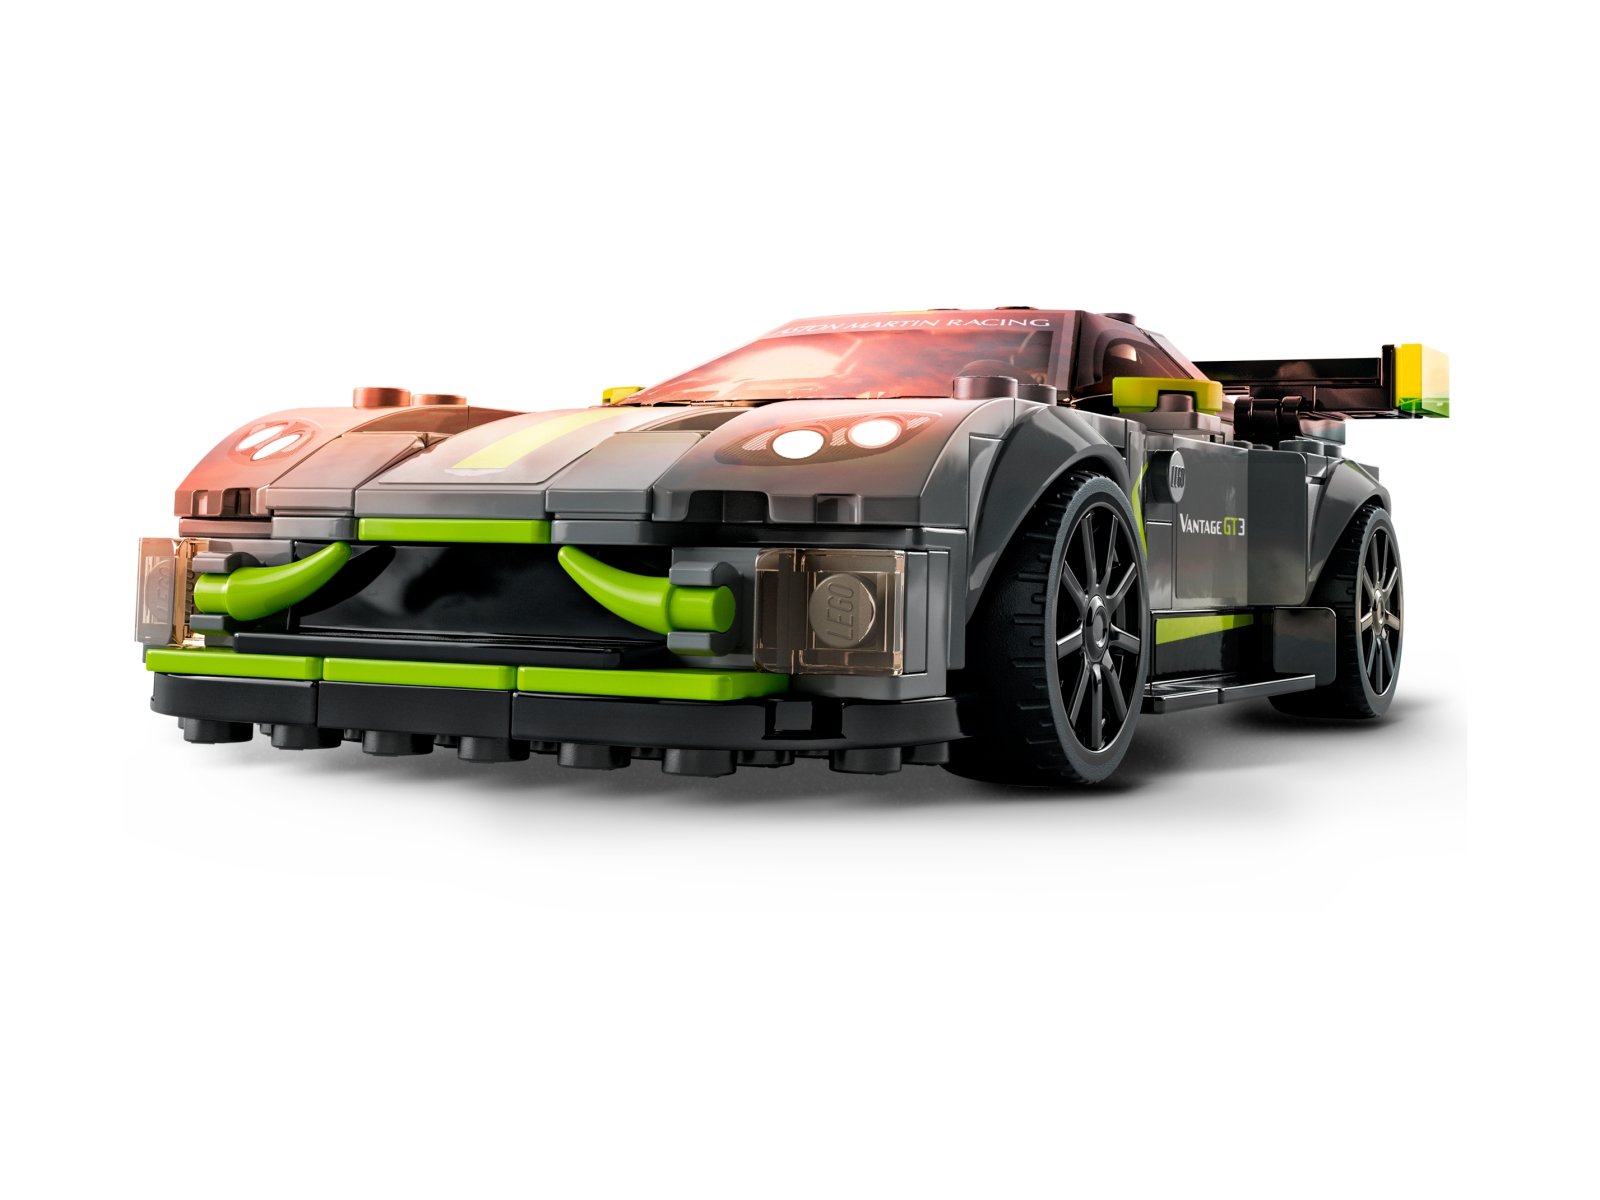 LEGO Speed Champions Aston Martin Valkyrie AMR PRO i Aston Martin Vantage GT3 76910